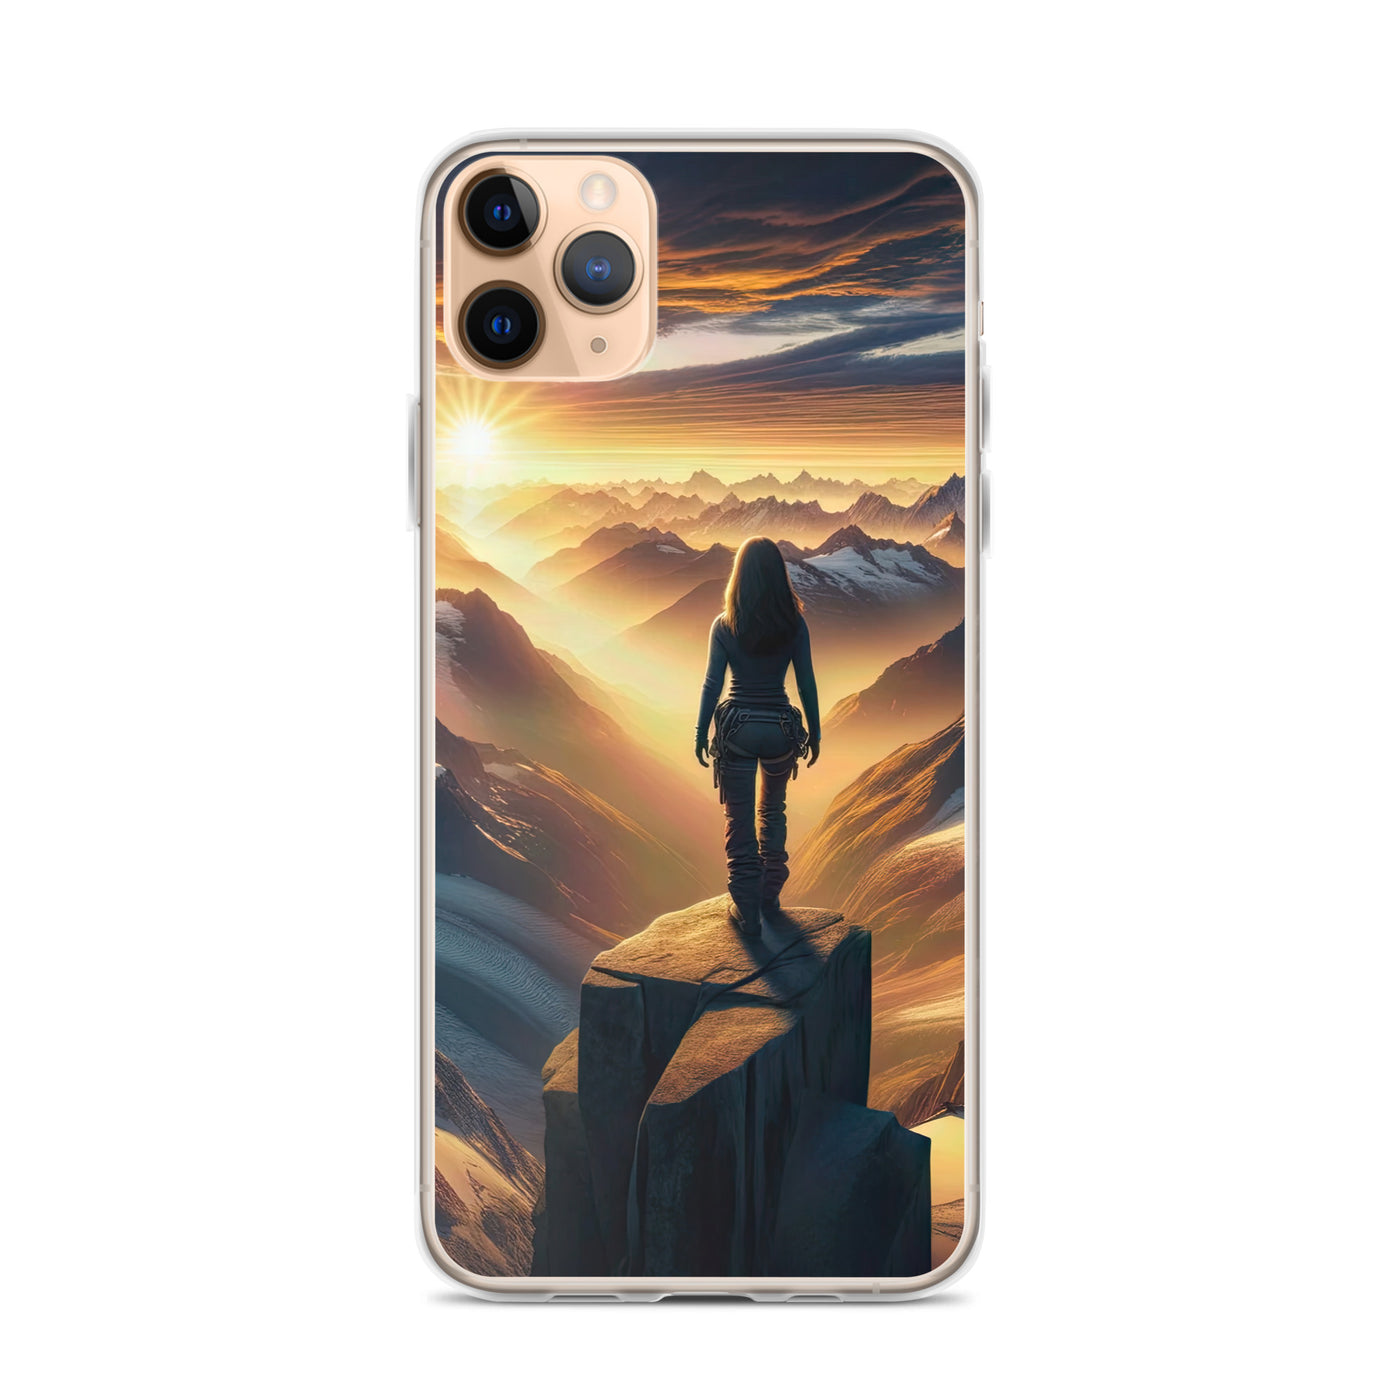 Fotorealistische Darstellung der Alpen bei Sonnenaufgang, Wanderin unter einem gold-purpurnen Himmel - iPhone Schutzhülle (durchsichtig) wandern xxx yyy zzz iPhone 11 Pro Max